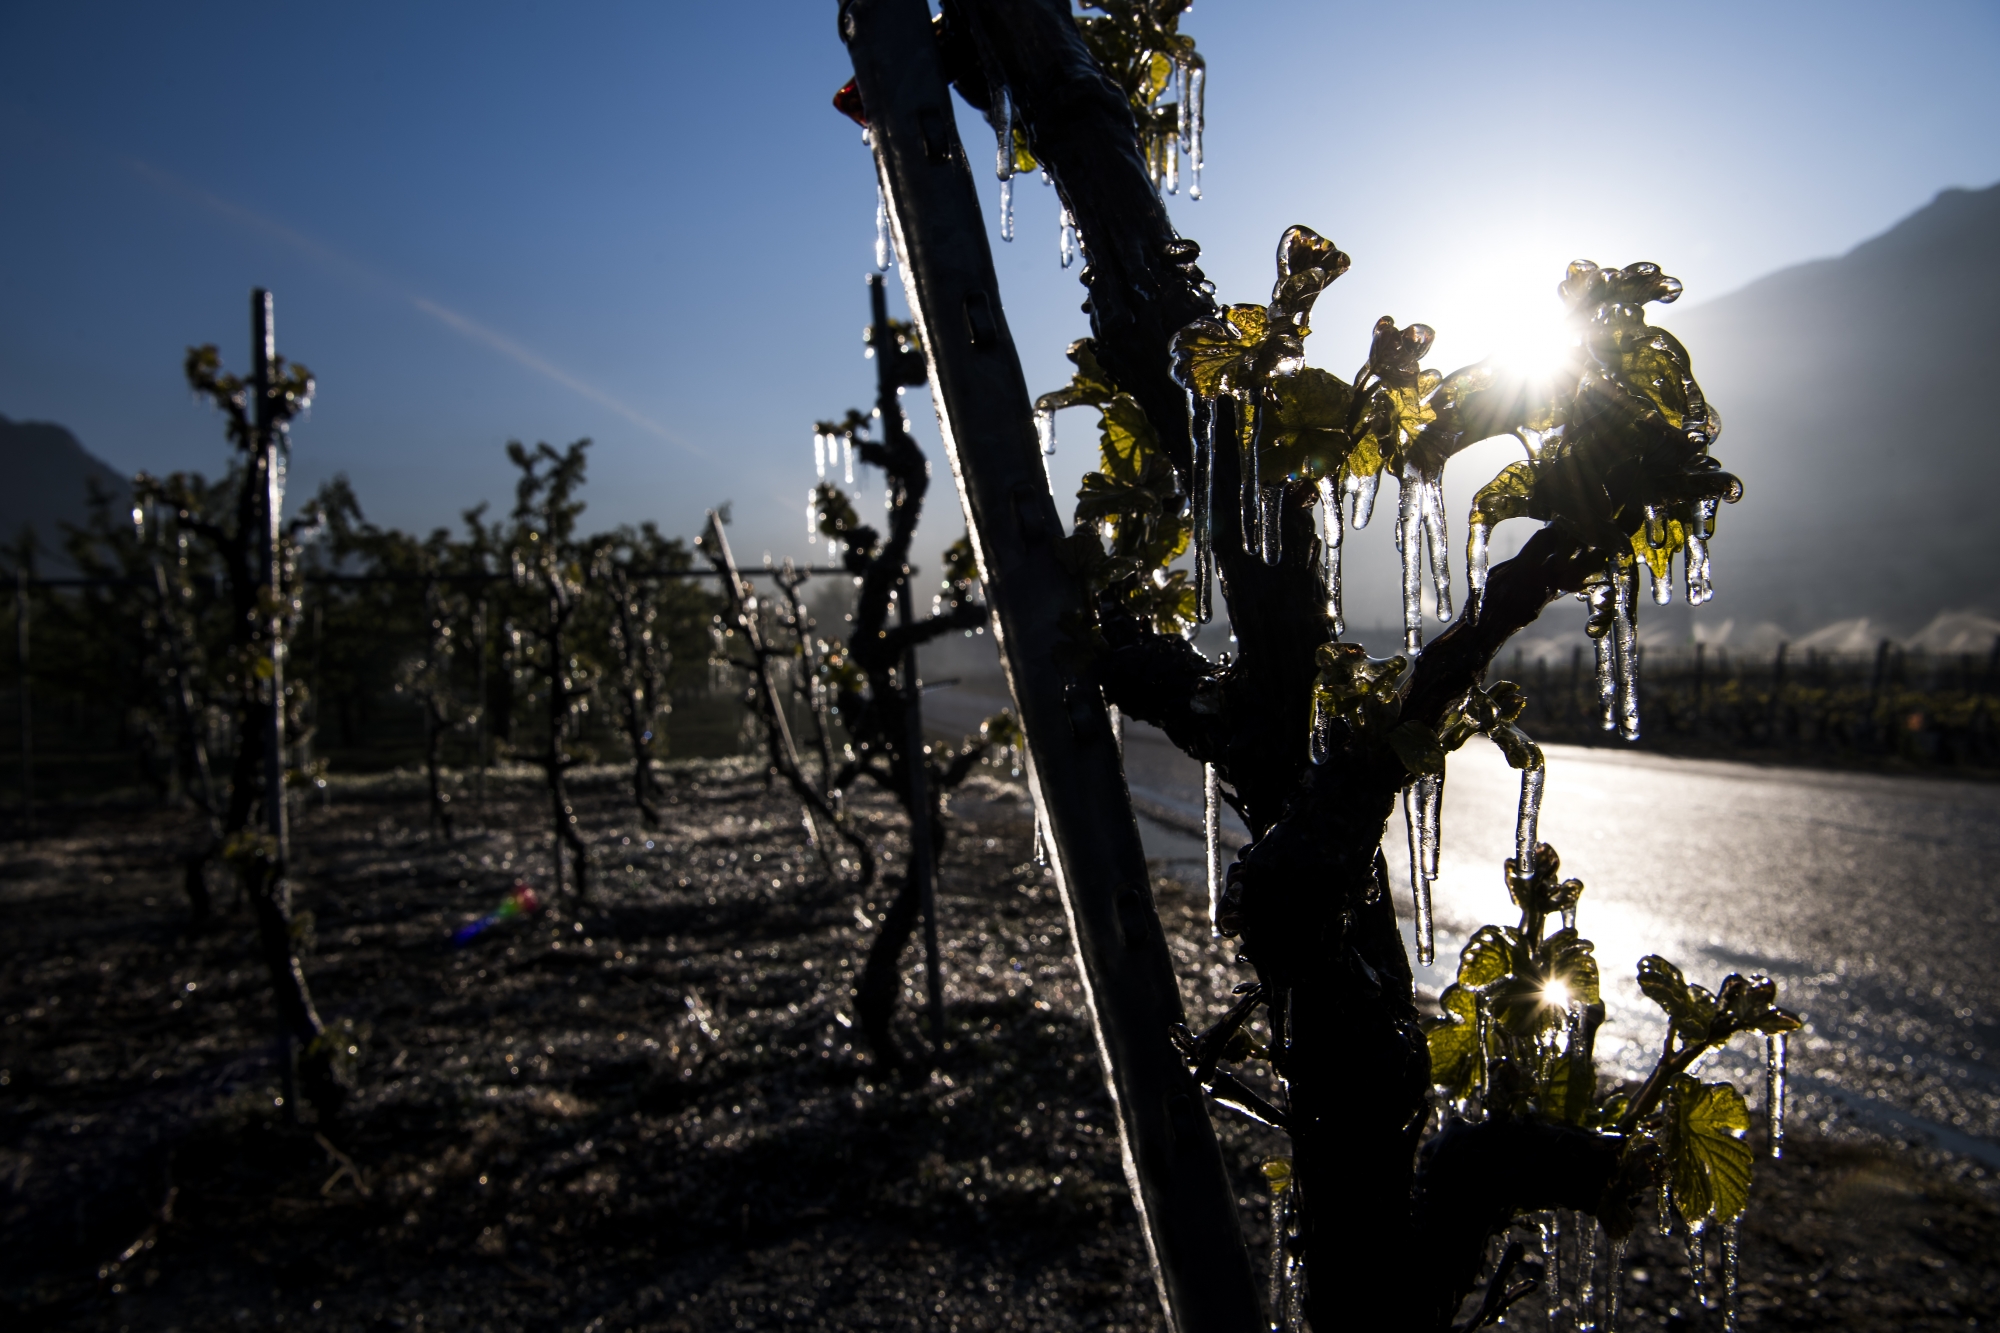 Les vignes ont souffert des températures glaciales enregistrées ces deux dernières nuits. Photo prise dans le canton du Valais.